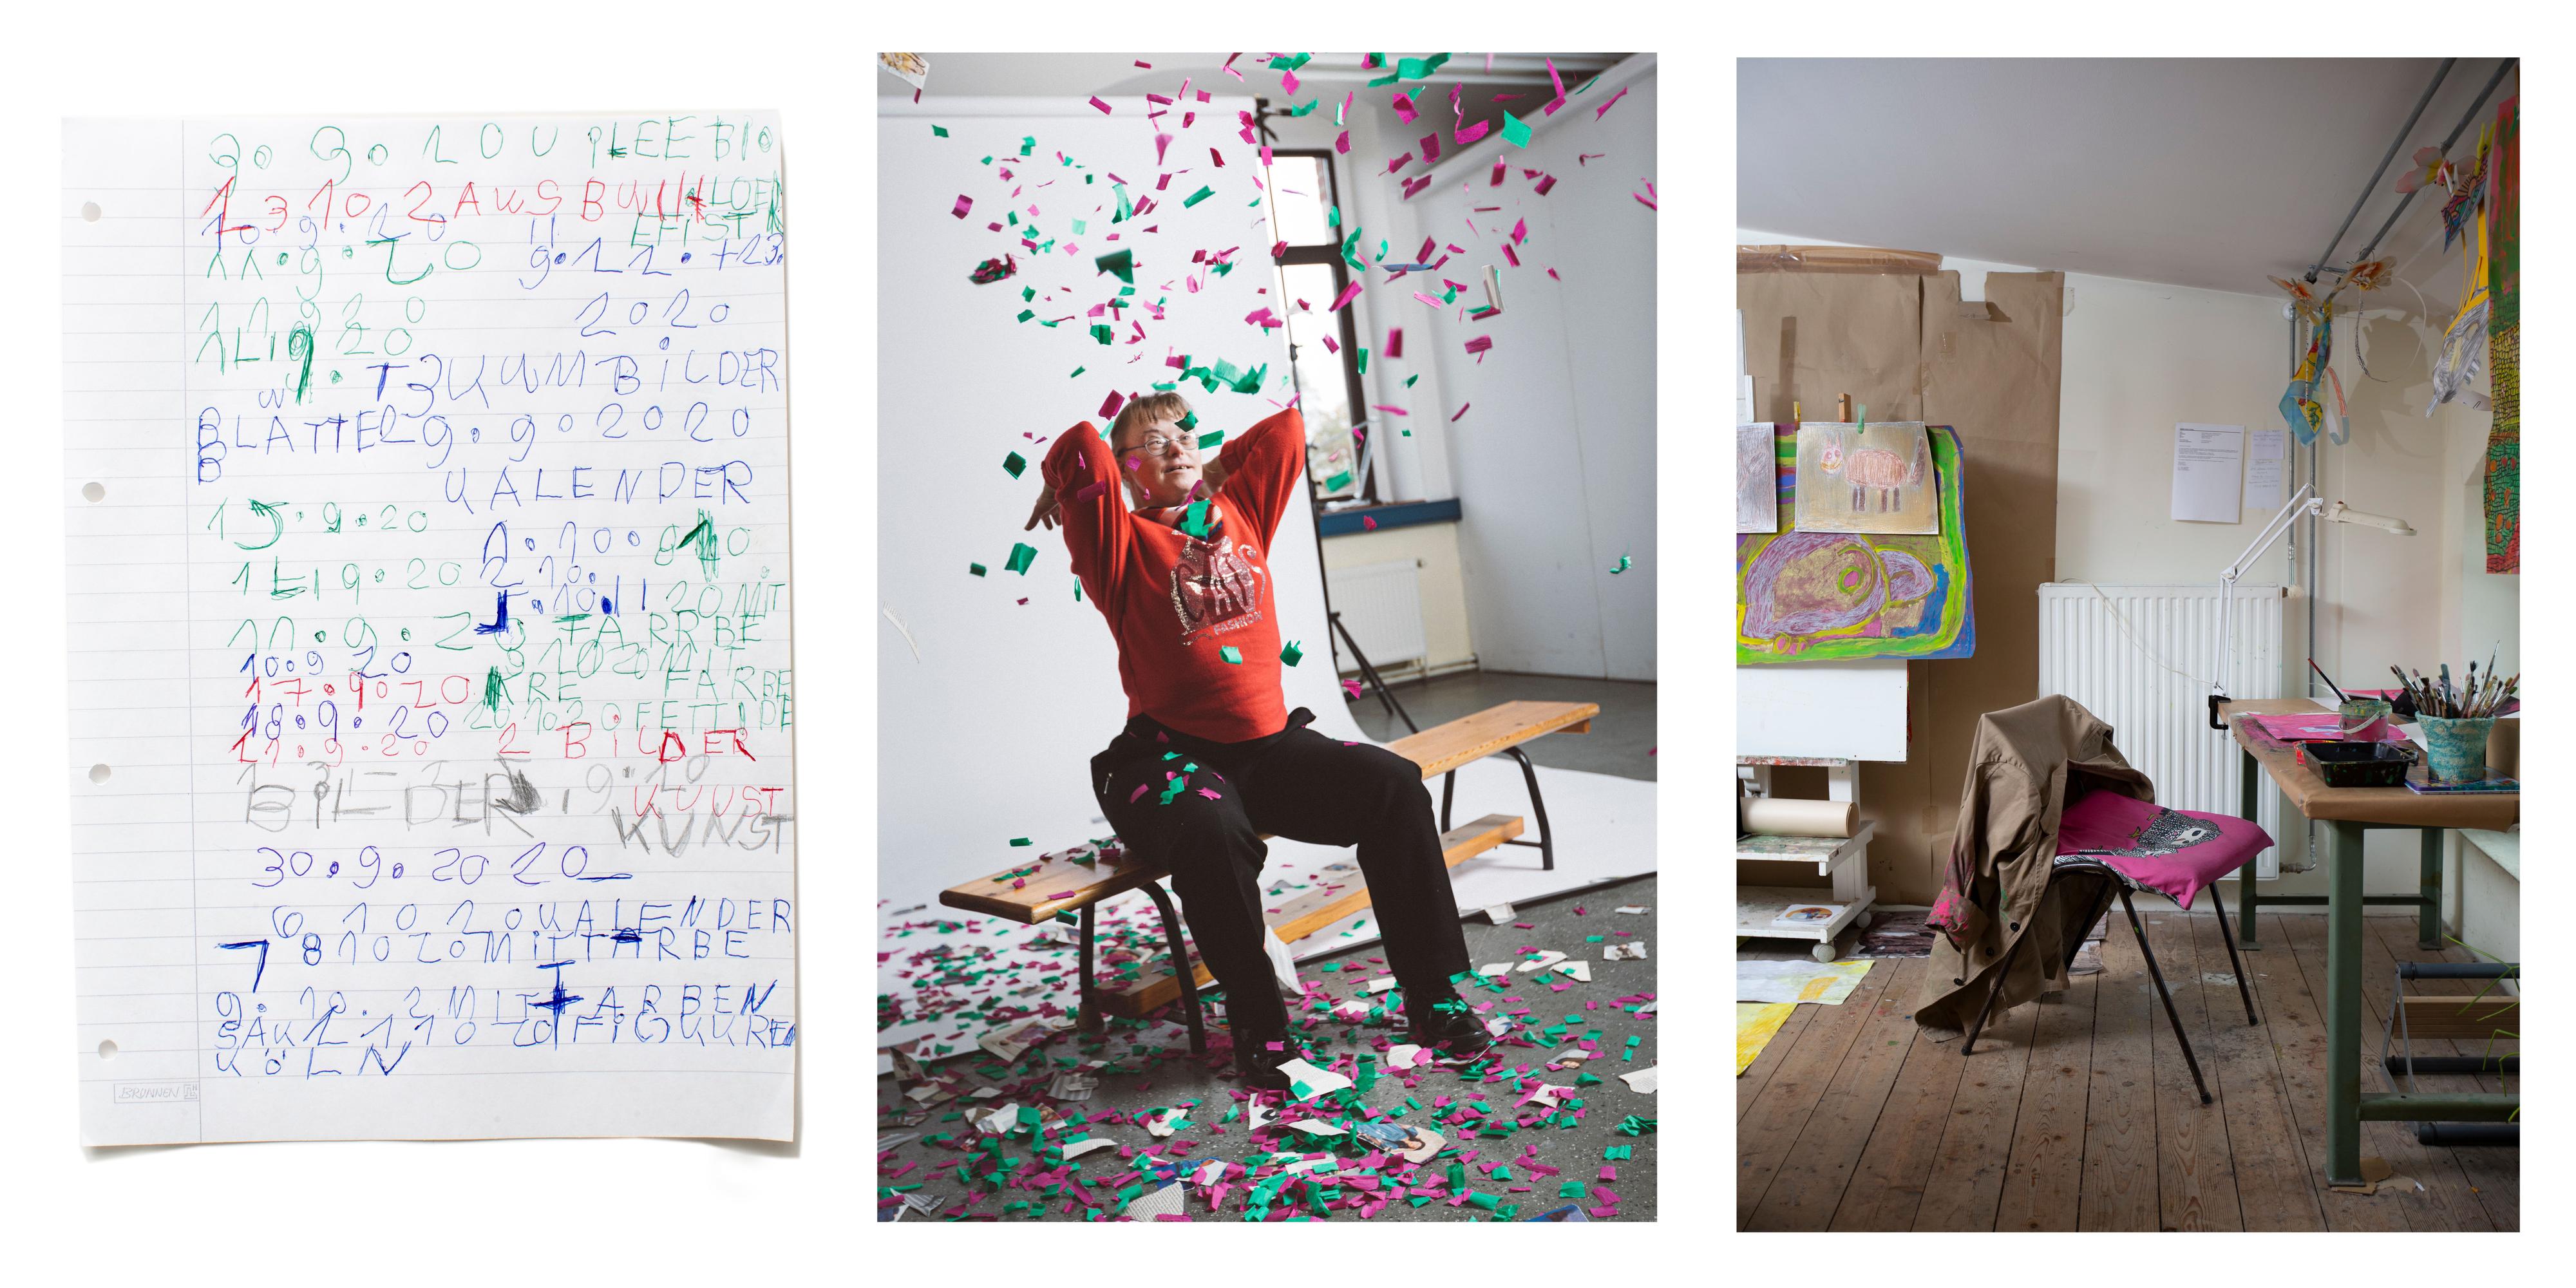 Collage aus drei Bildern: Liniertes Blatt Papier mit Zahlen und Buchstaben, eine Frau sitzt auf einer Bank und wirft bunte Papierschnipsel in die Luft, ein Atelier mit Malutensilien.